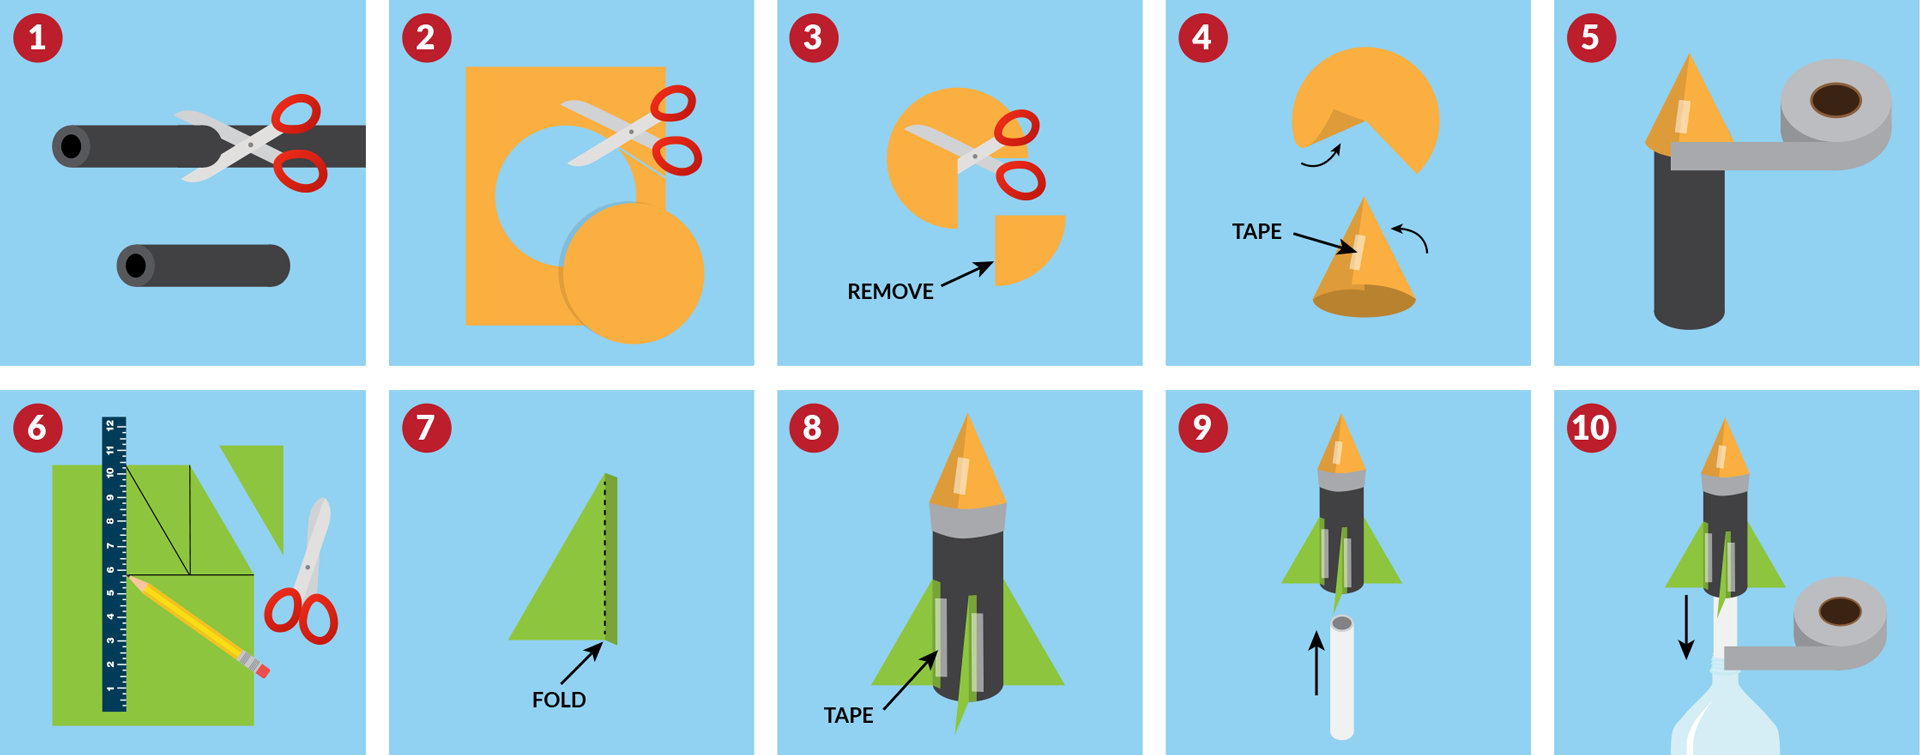 Макет ракеты из бумаги. Схема конструирования ракеты из бумаги для детей. Поделка ракета из бумаги. Конструирование из бумаги ракета. Ракета поделка пошагово.